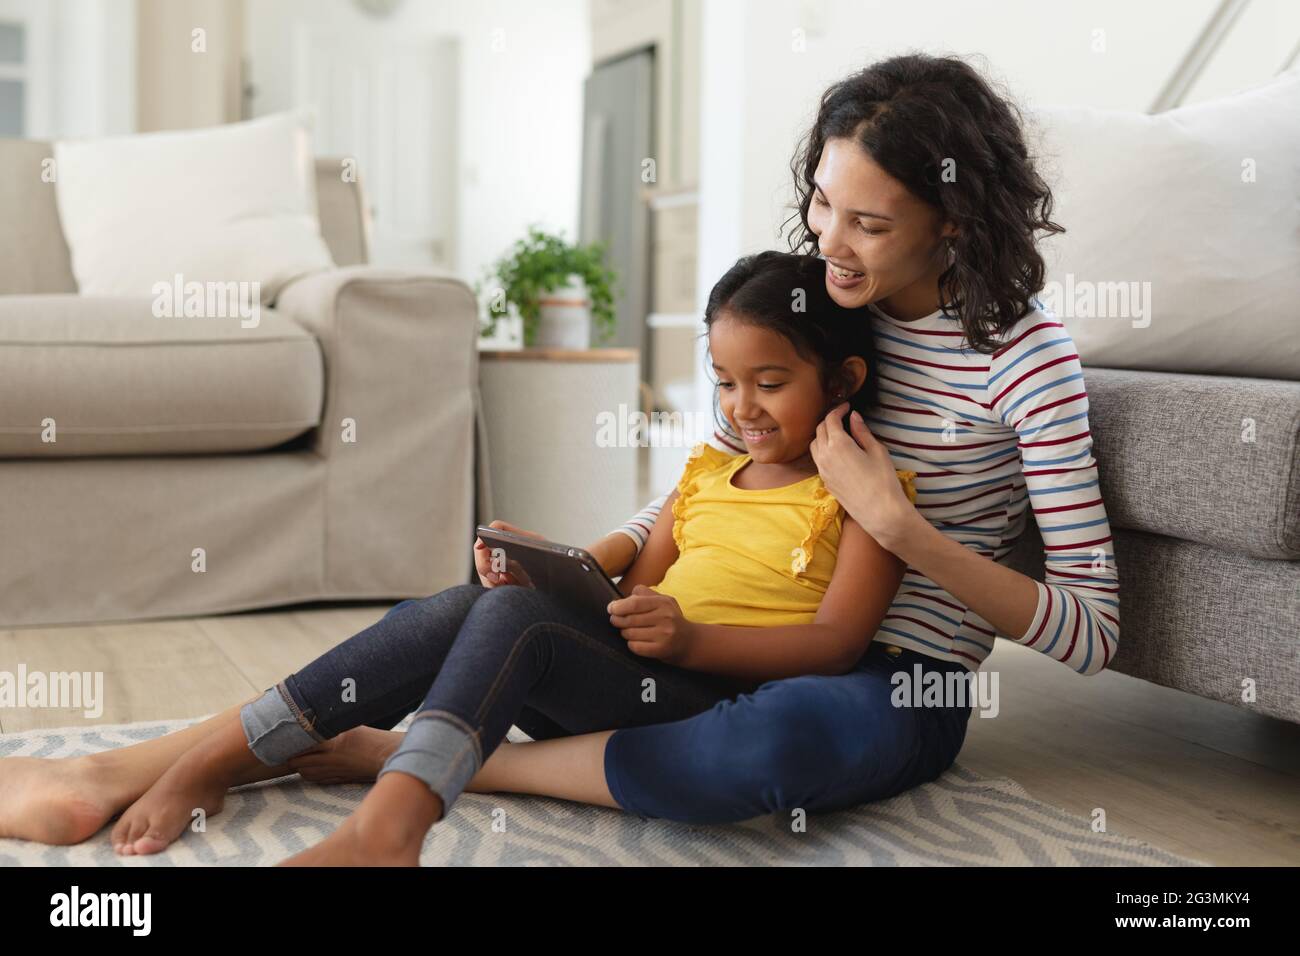 Sorridi madre e figlia ispanica seduti sul pavimento del soggiorno usando insieme un tablet Foto Stock